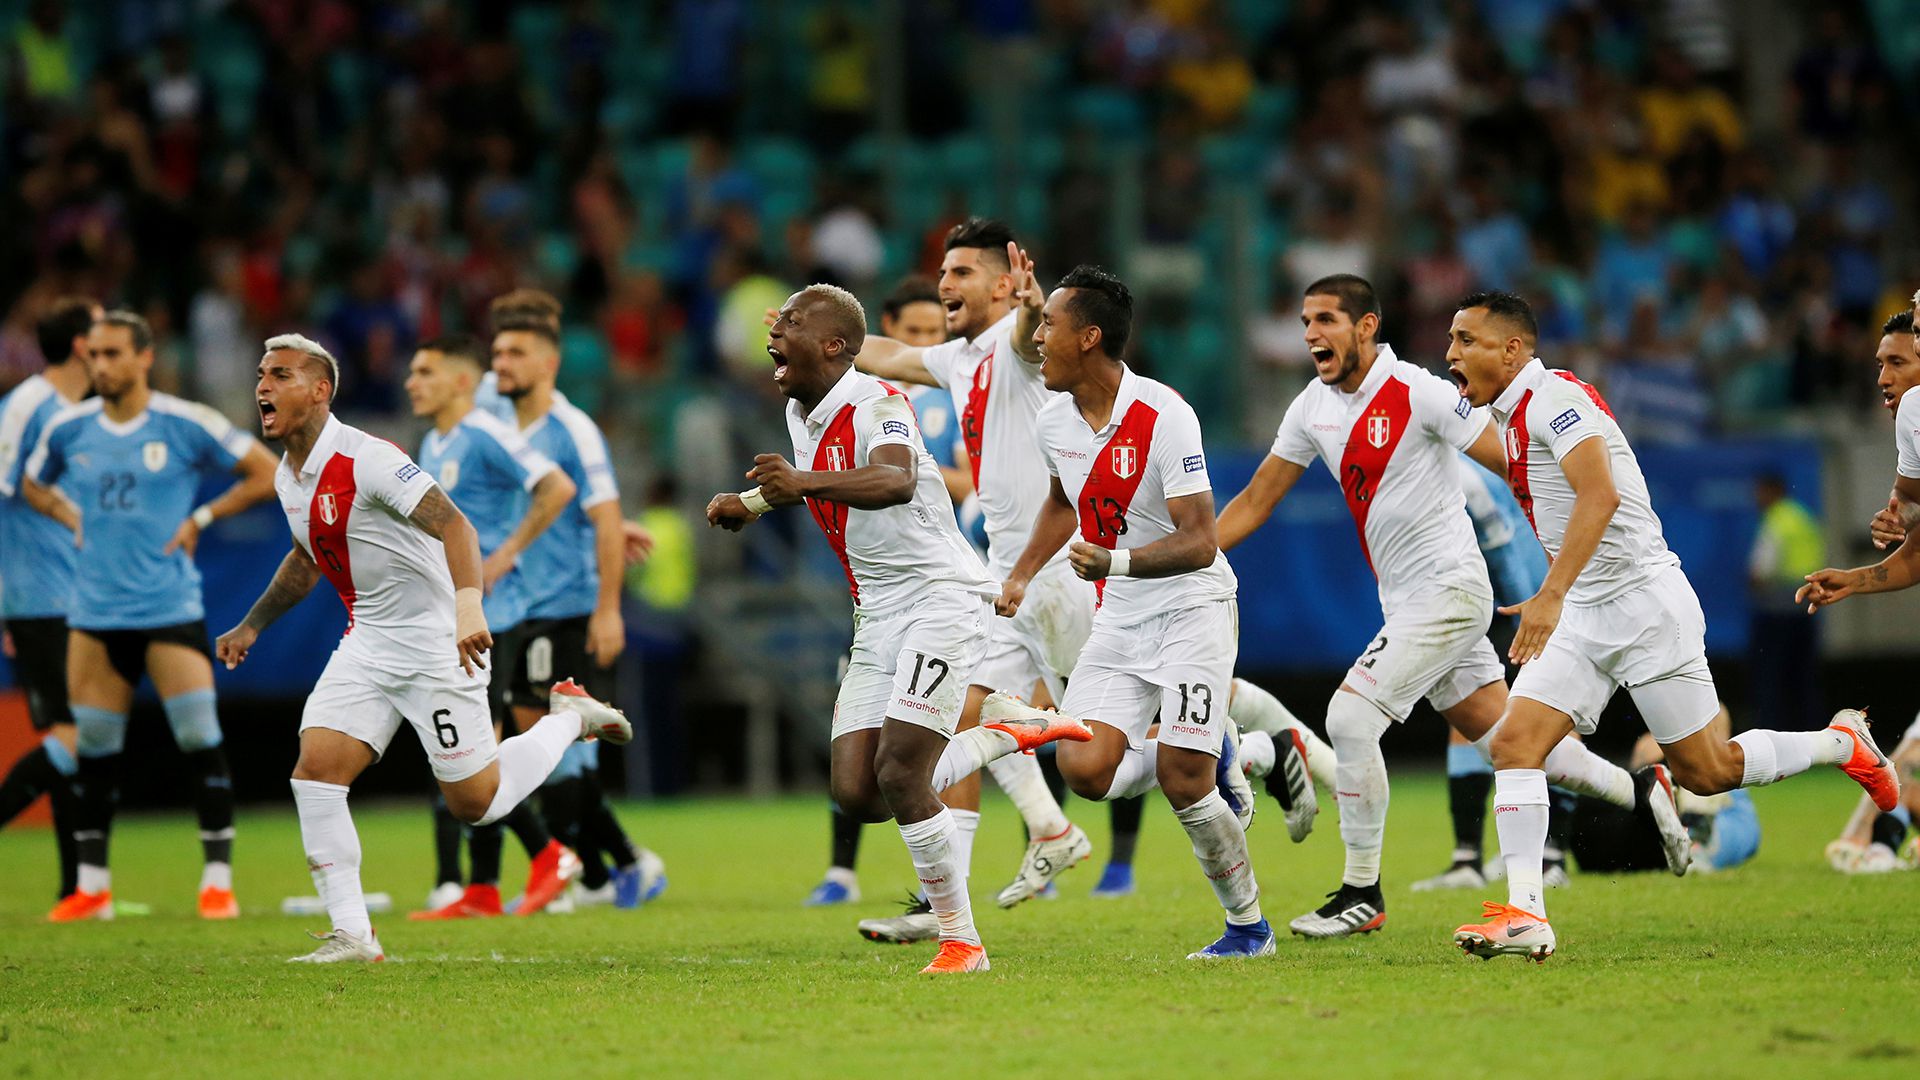 Perú eliminó a Uruguay en cuartos de final por penales, tras empatar 0-0 en el tiempo reglamentario (Reuters)